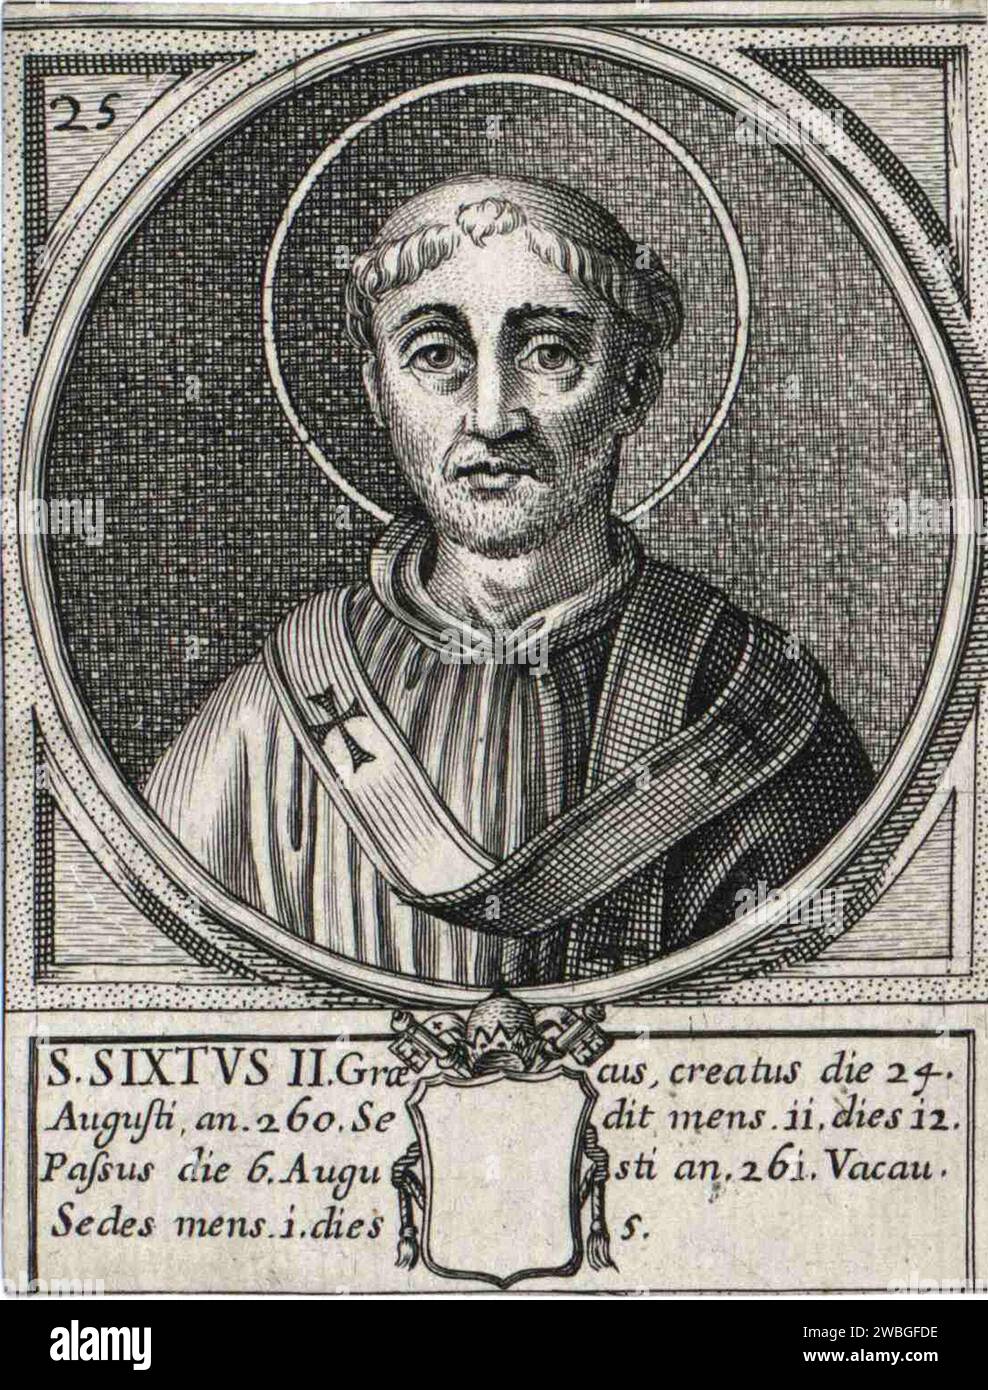 Gravure du 17e siècle du pape Sixte II, qui fut pontife de AD257 à AD258. Il était le 24e pape et est également connu sous le nom de pape Xyste II Il a été décapité après seulement 340 jours dans l'ogice lorsque l'empereur Valérian a lancé une série de persécutions contre les chrétiens. Banque D'Images